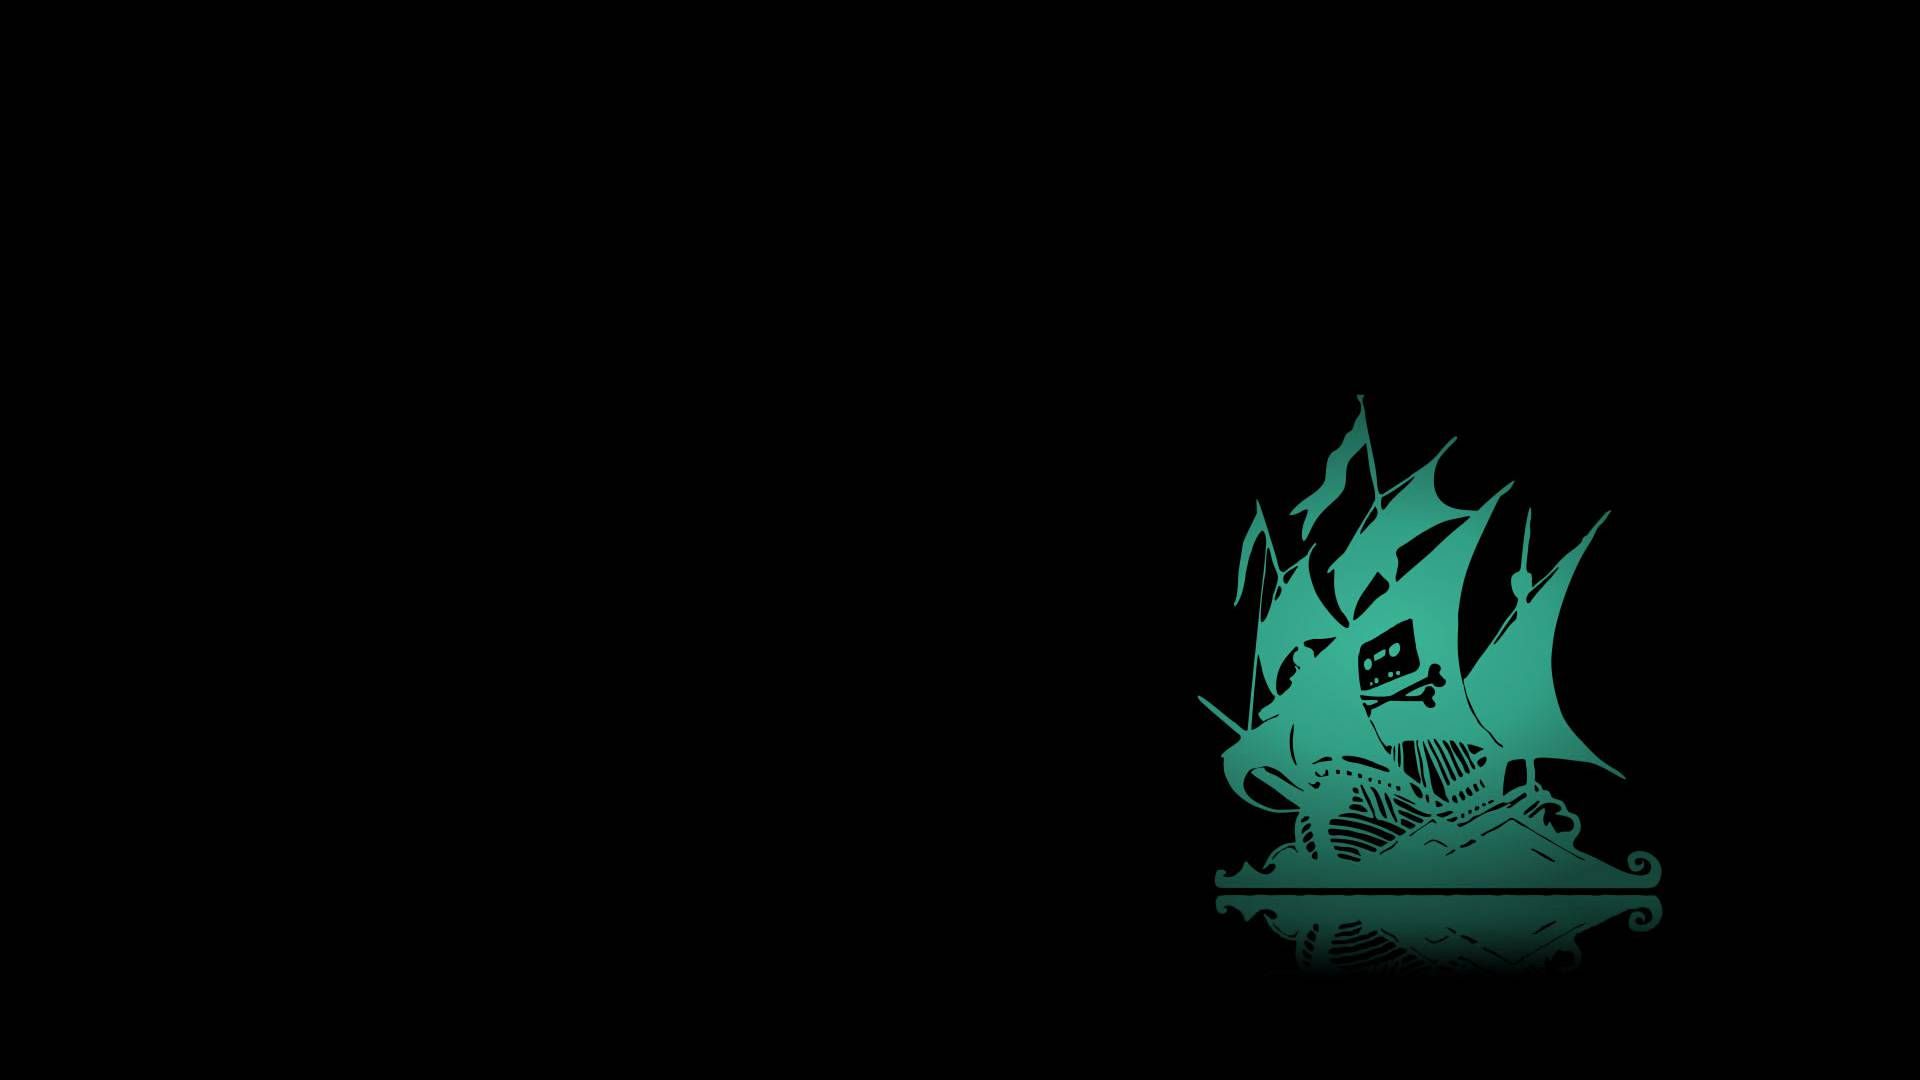 Black Pirate Background. Pirate